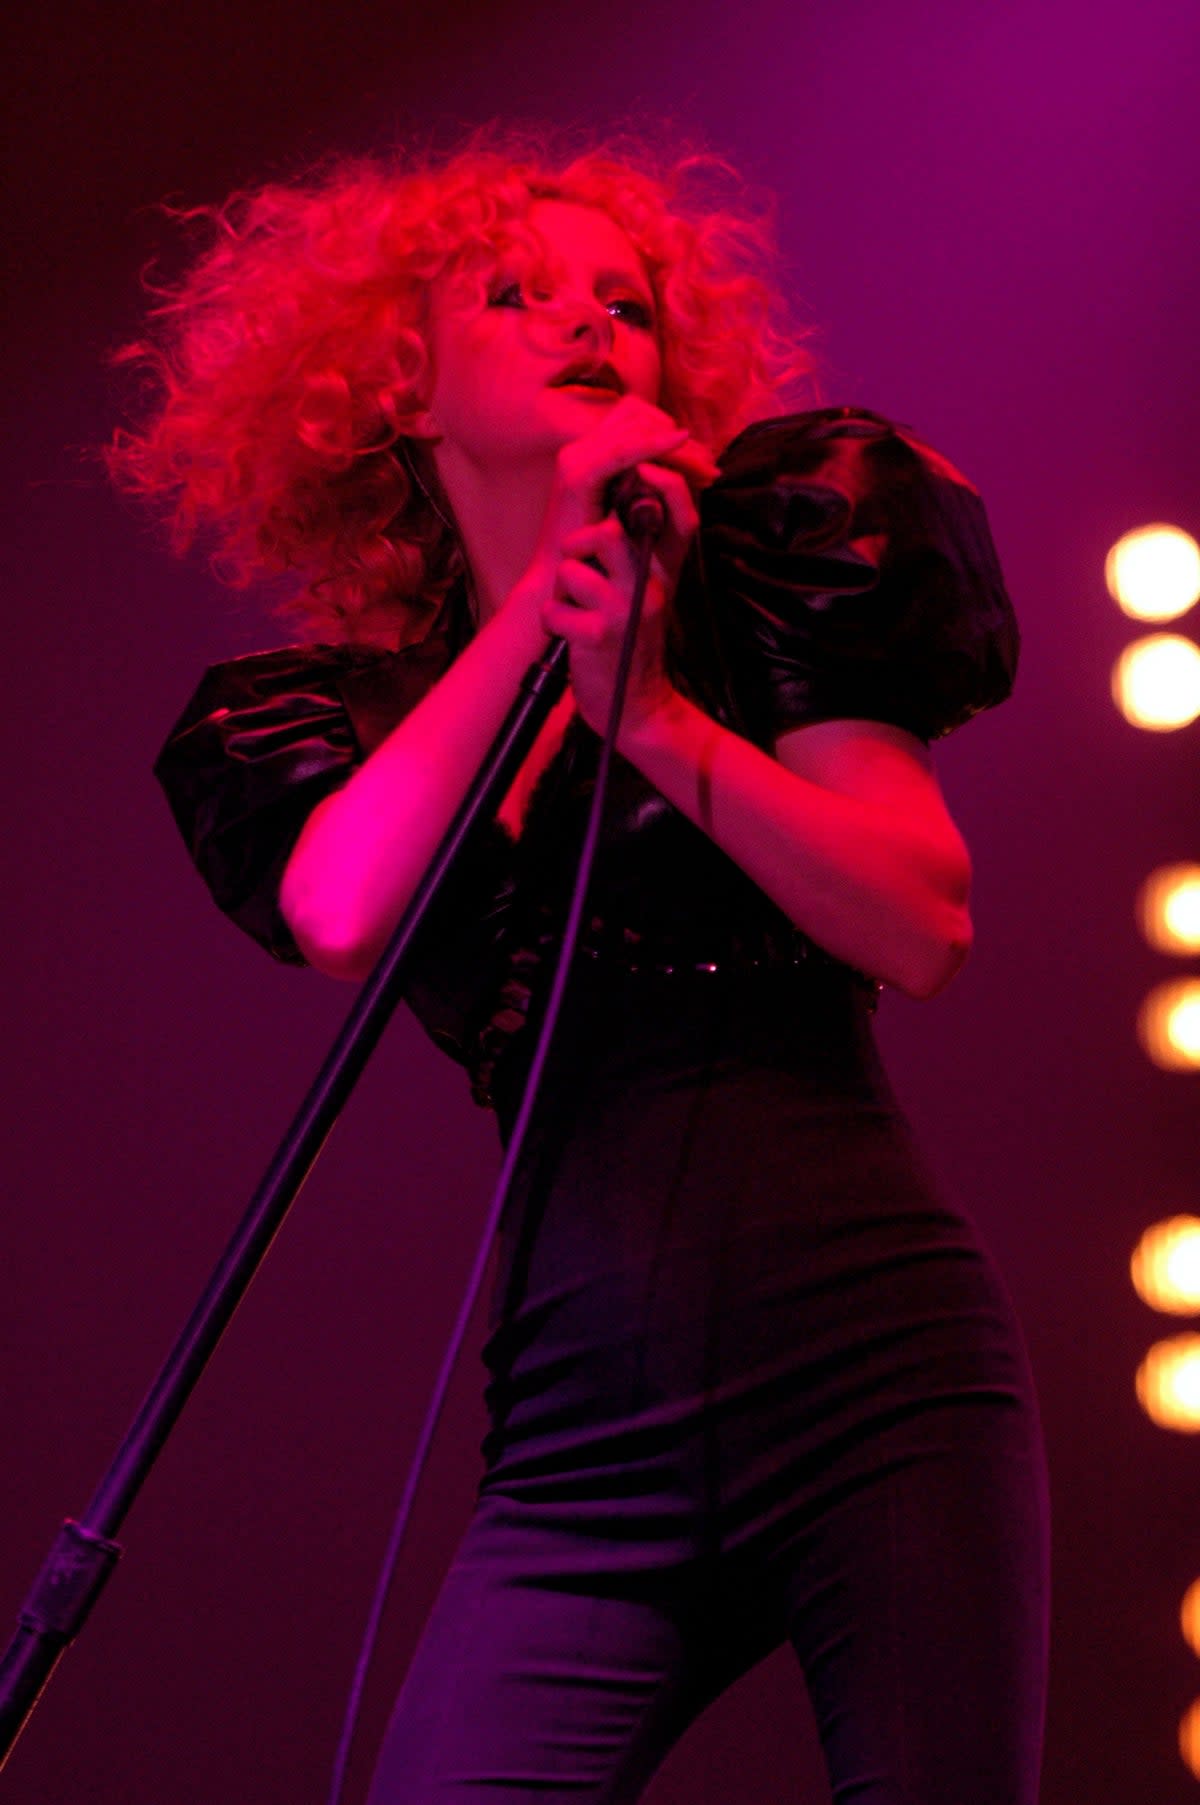 ‘It got quite intense’: Goldfrapp in concert in 2005 (Shutterstock)